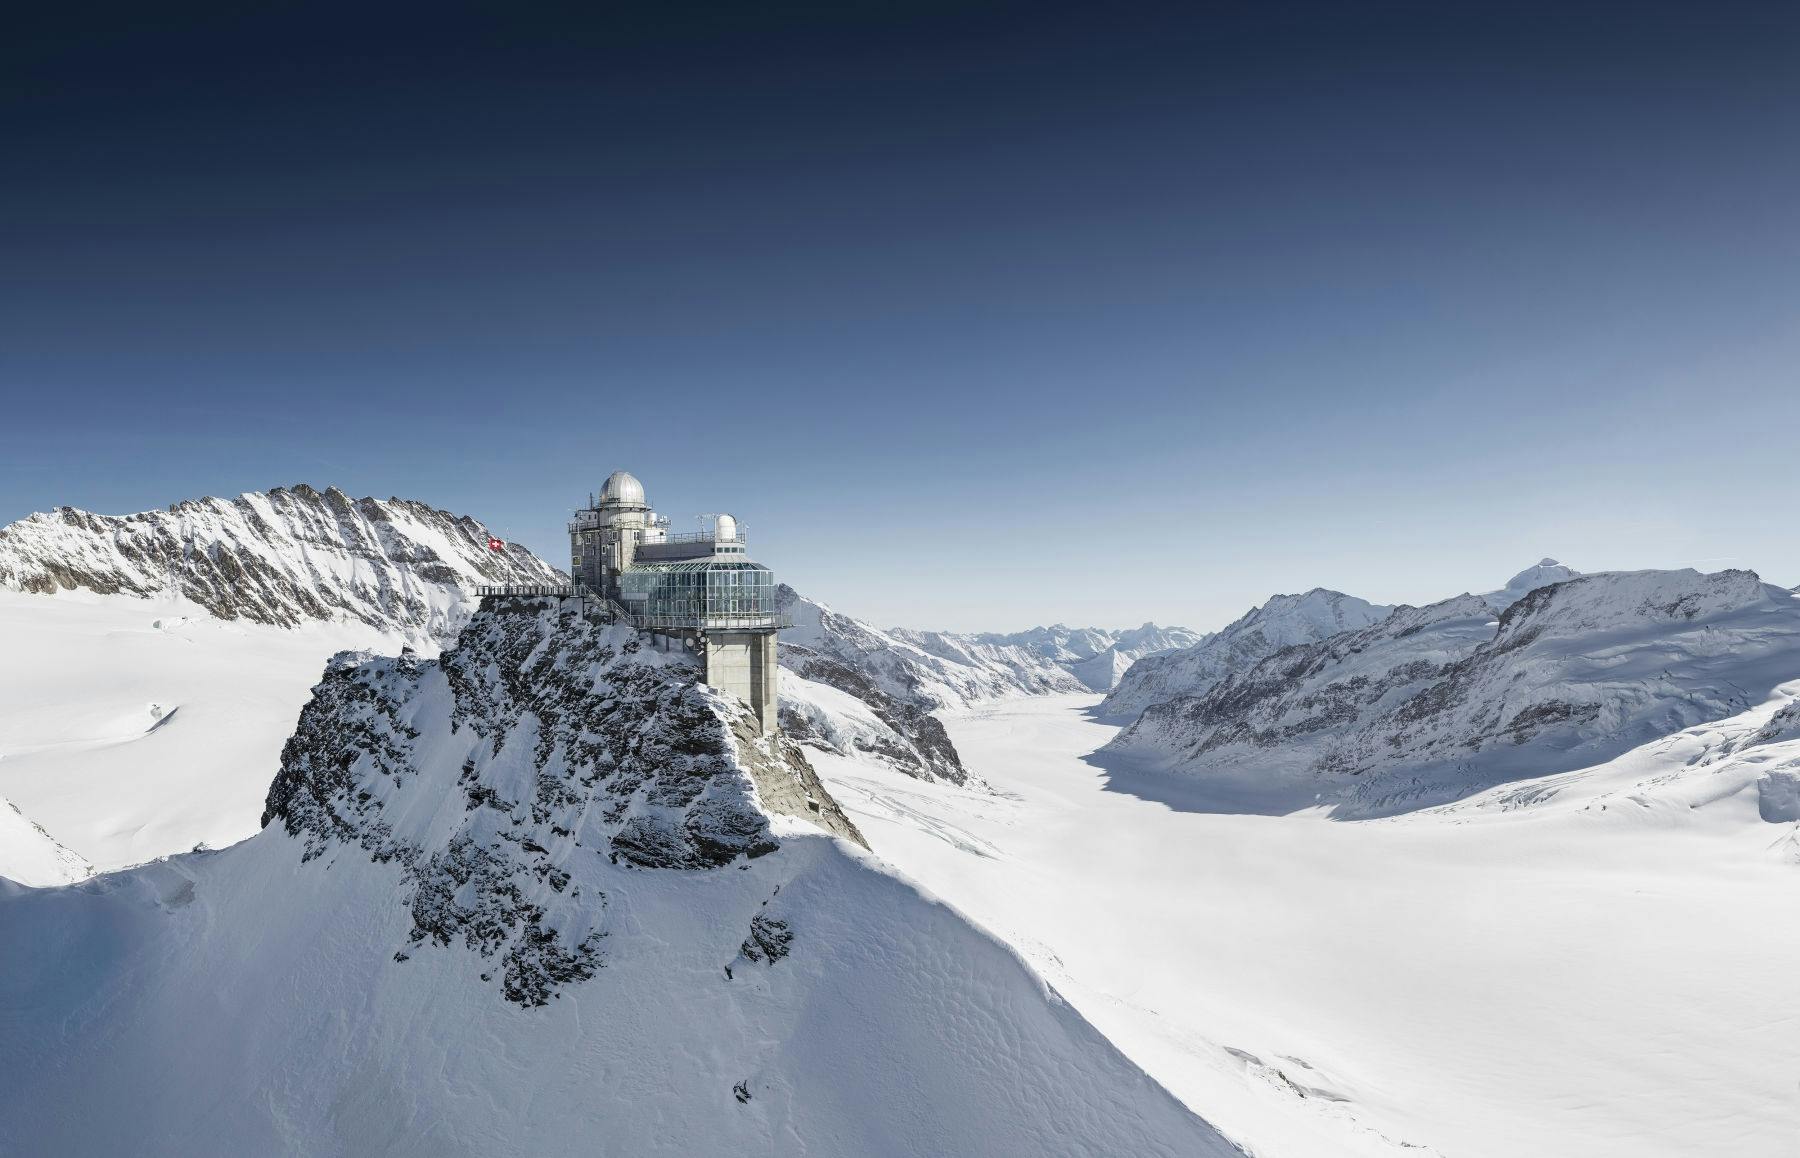 El billete más alto de Europa al Jungfraujoch desde Interlaken